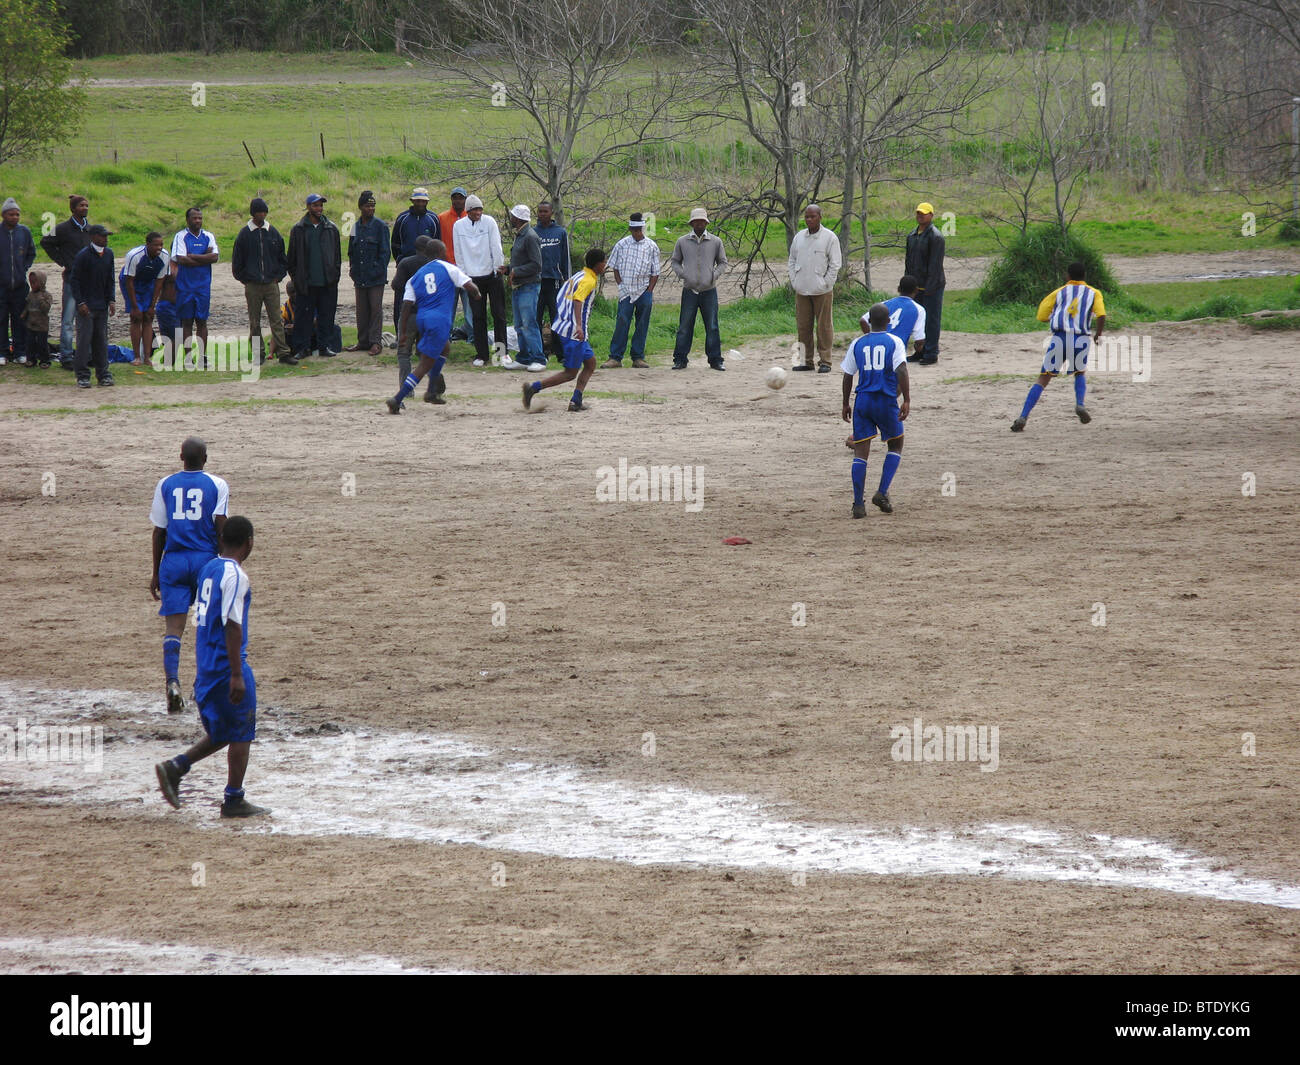 Partido de fútbol jugado en una zona rural Foto de stock